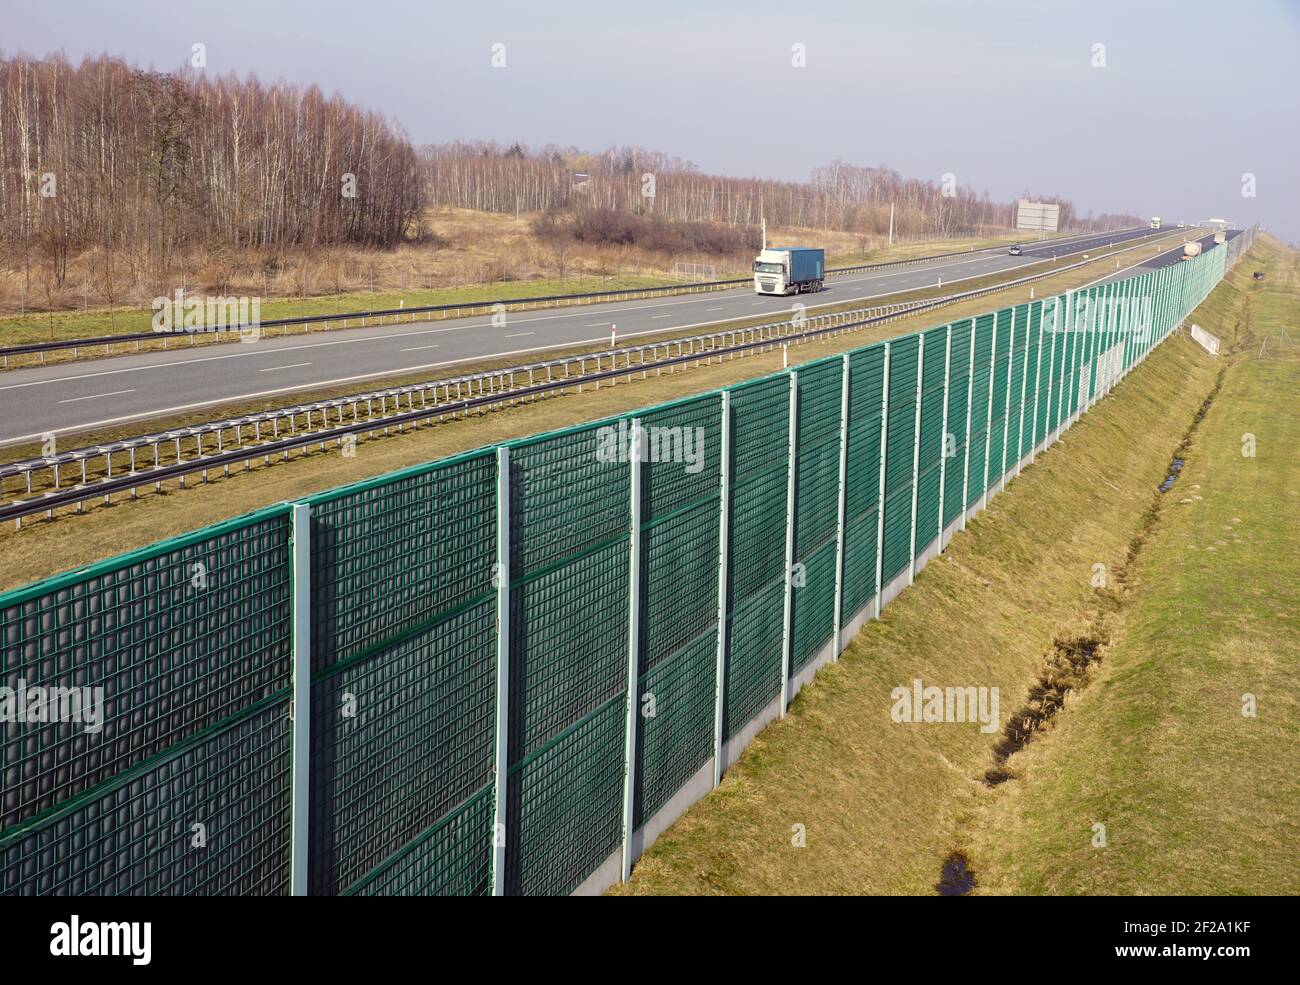 Alte barriere fonoassorbenti che separano l'autostrada dall'area residenziale. Noti anche come pannelli assorbenti, soundbar, barriere antirumore, ecc. Foto Stock